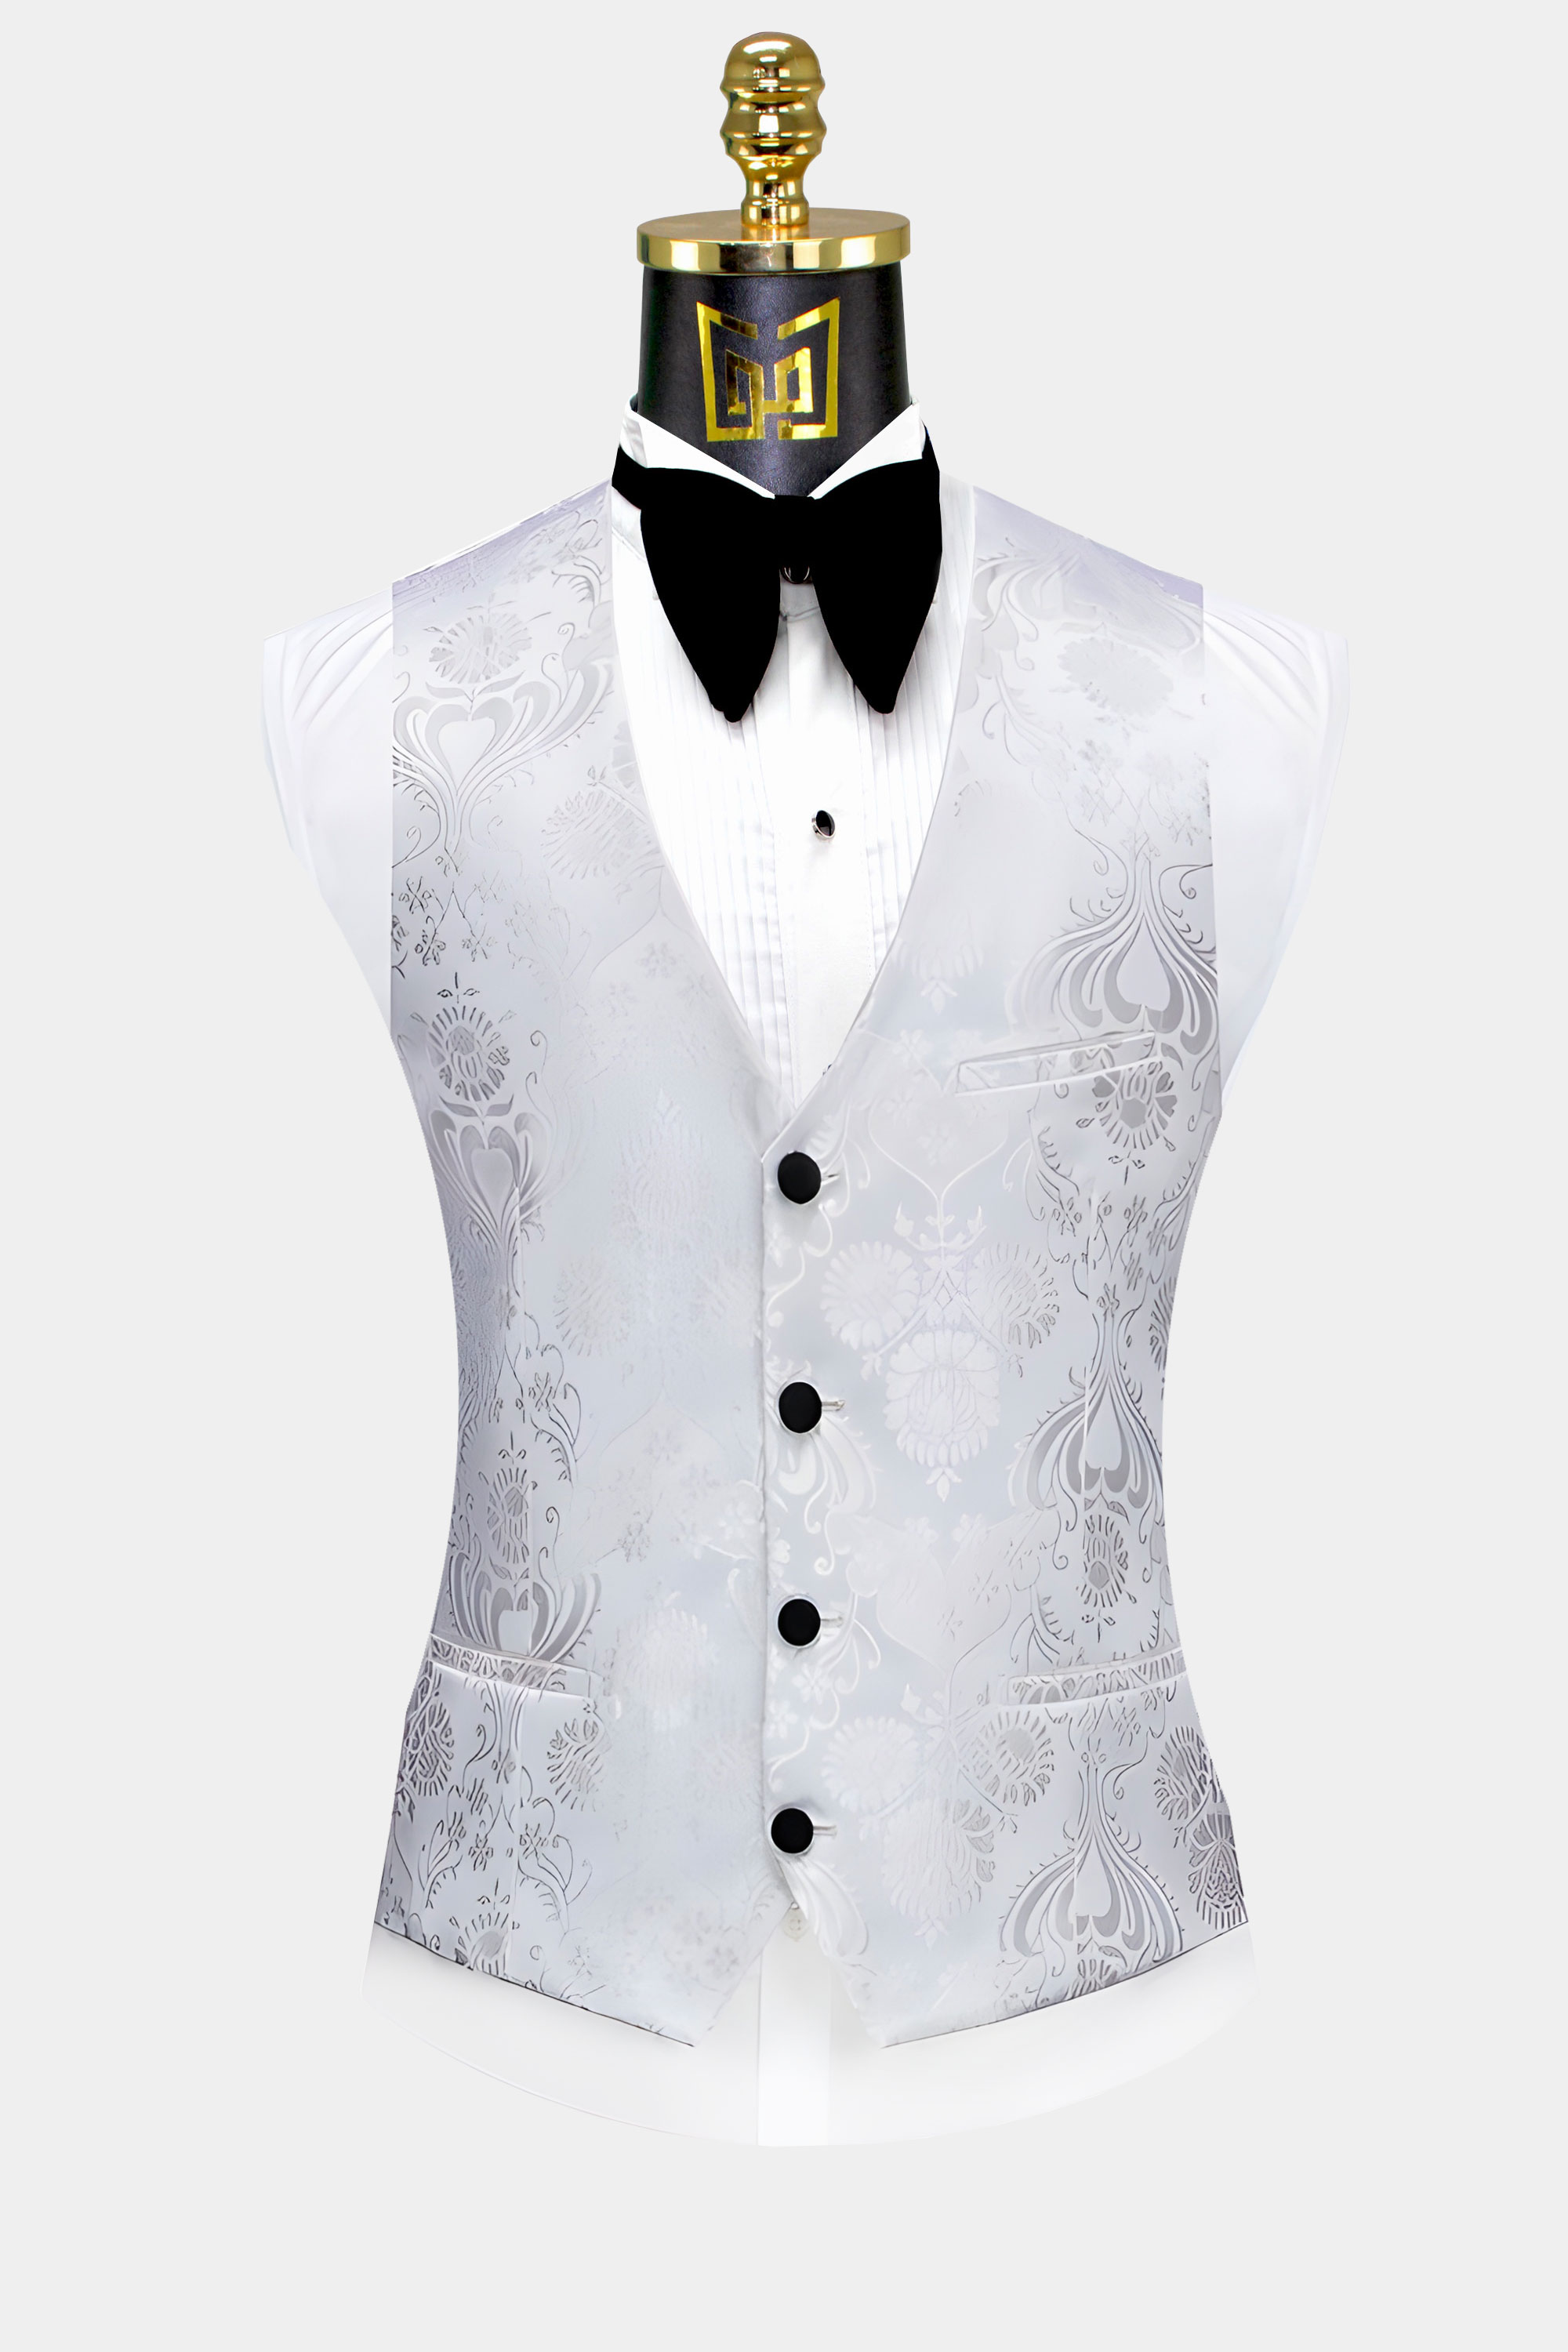 Floral-White-Silver-Tuxedo-Vest-from-Gentlemansguru.Com